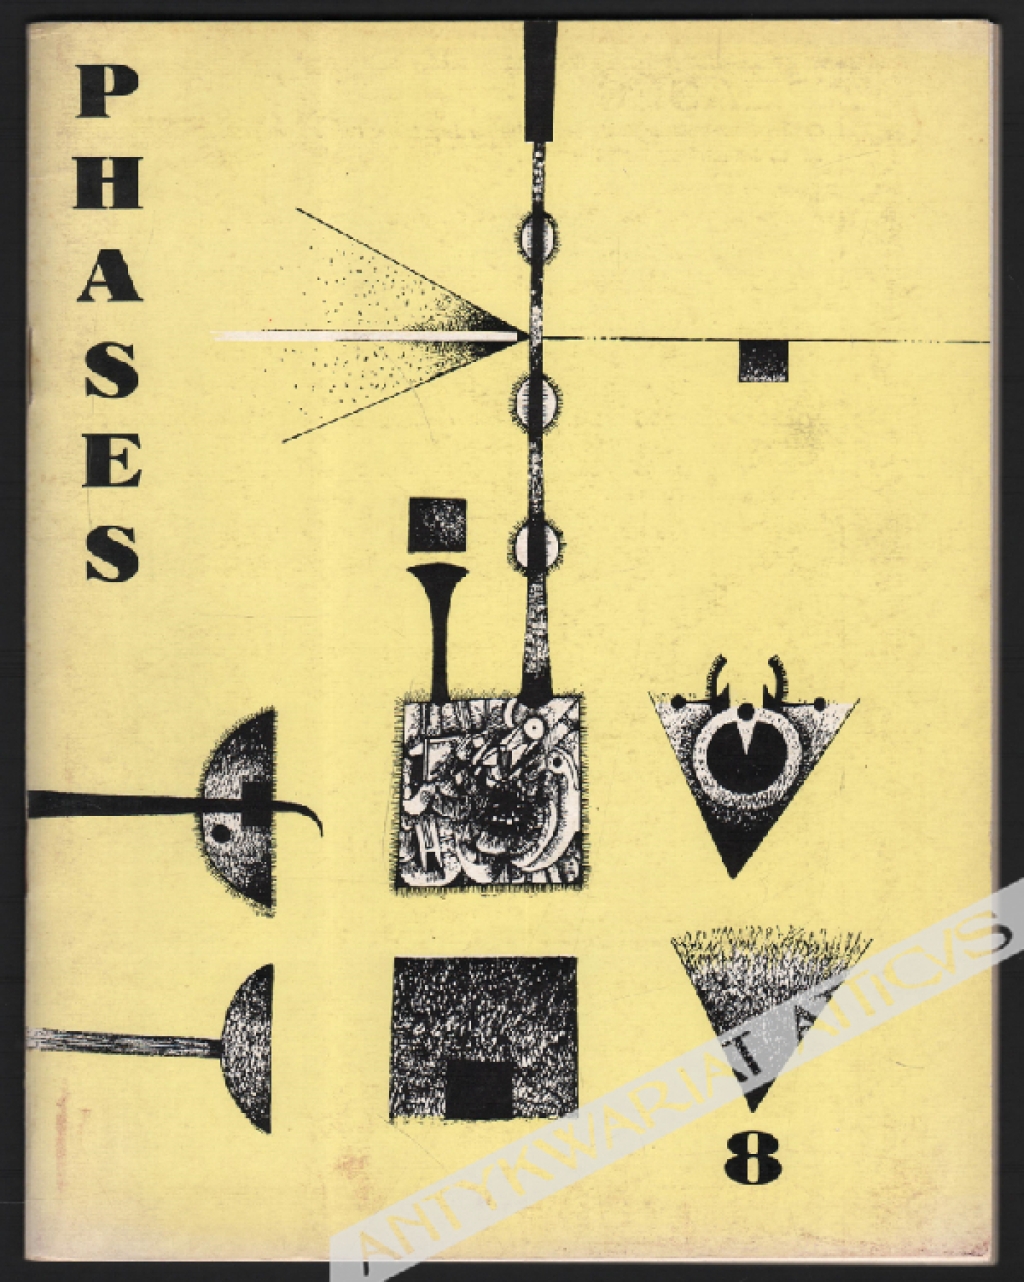 [Zbigniew Makowski] Phases. Cahiers internationaux de documentation sur la poesie et l'art d'avant-garde. No. 9, Janvier 1963